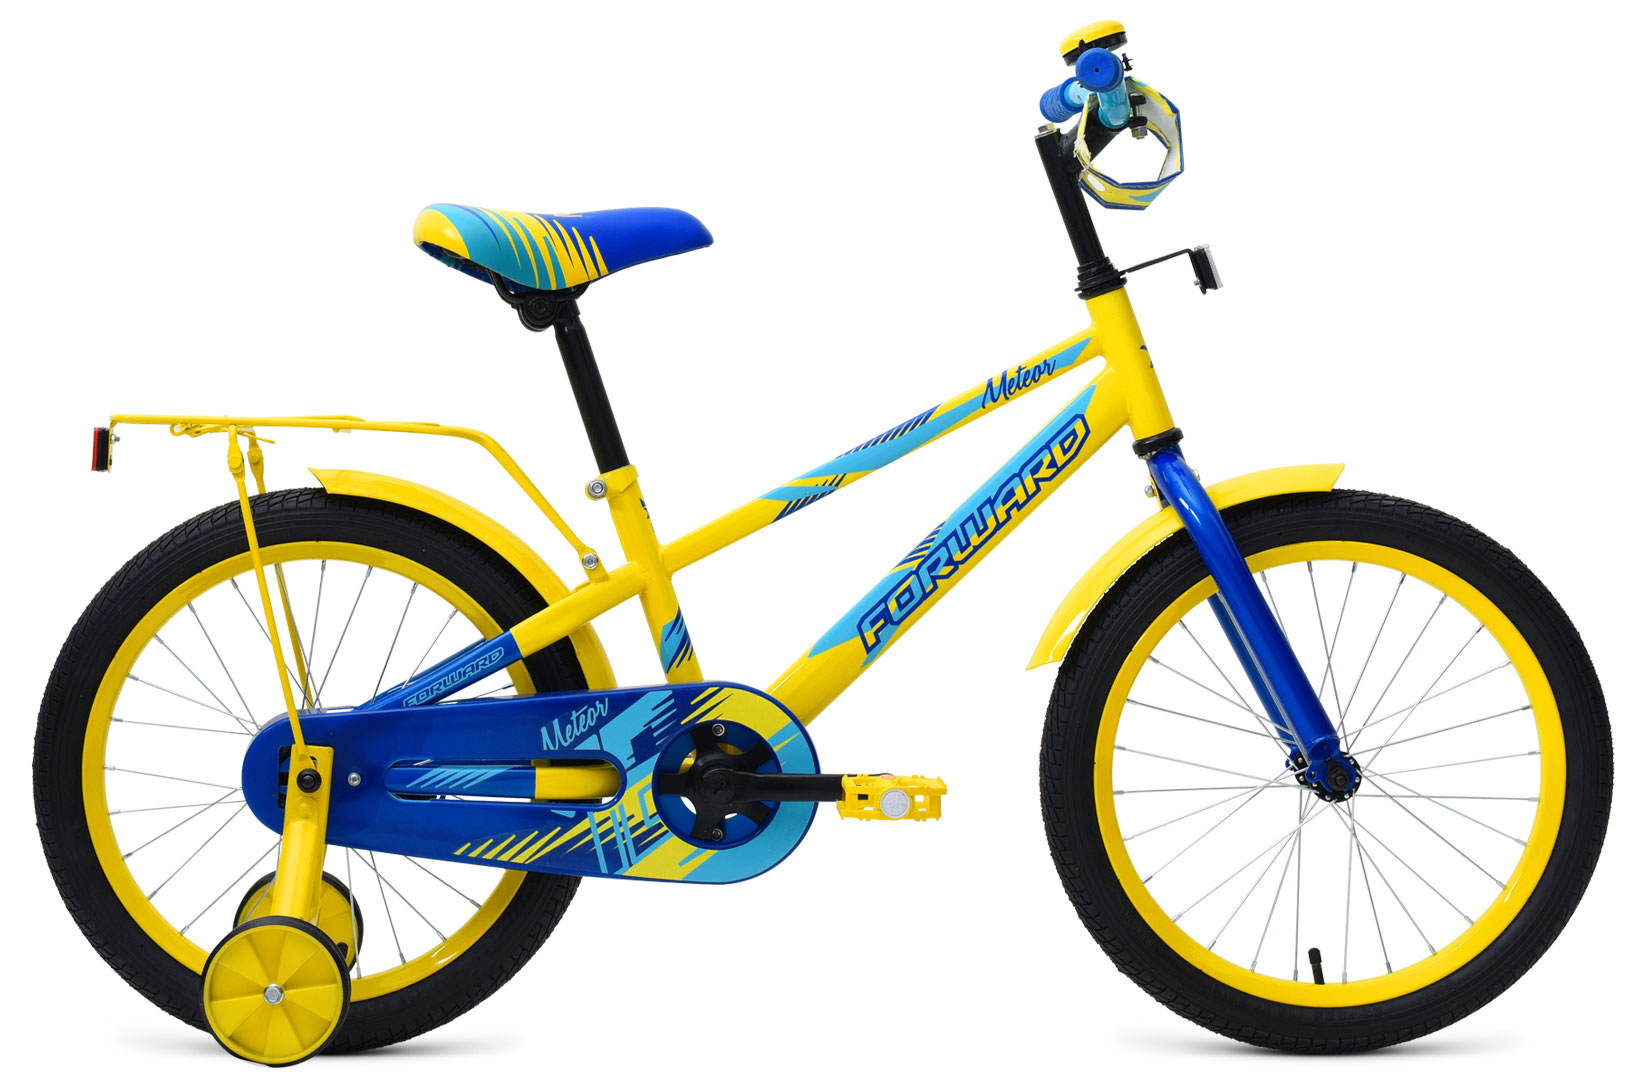  Отзывы о Трехколесный детский велосипед Forward Meteor 18 2019